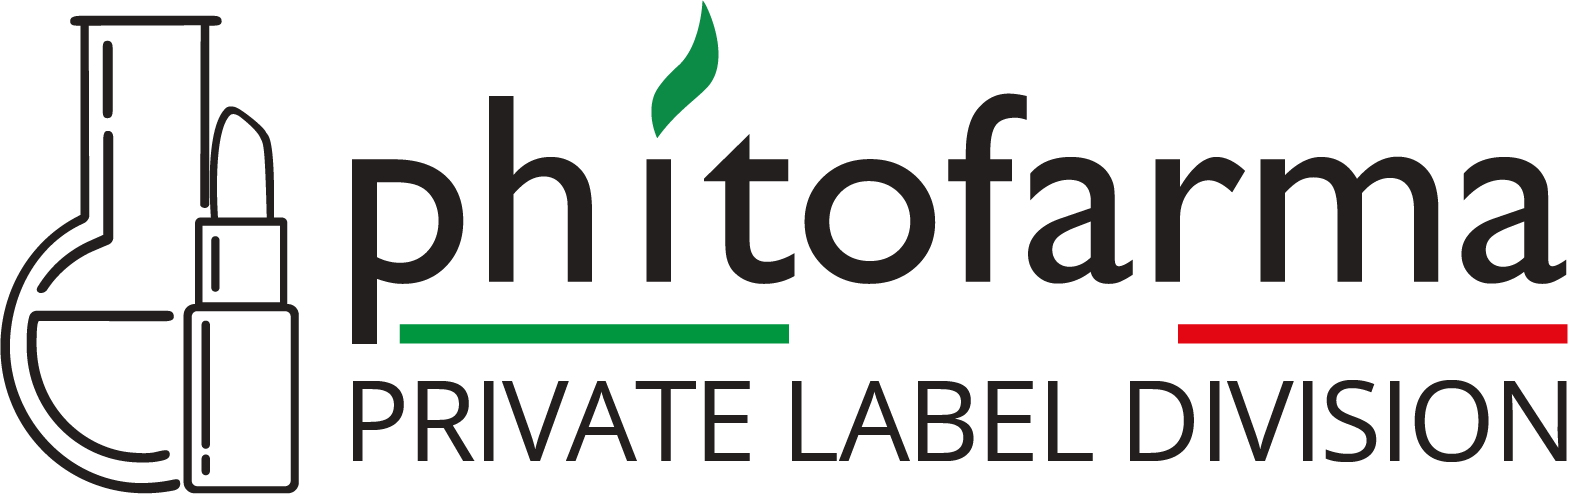 Phitofarma private label division